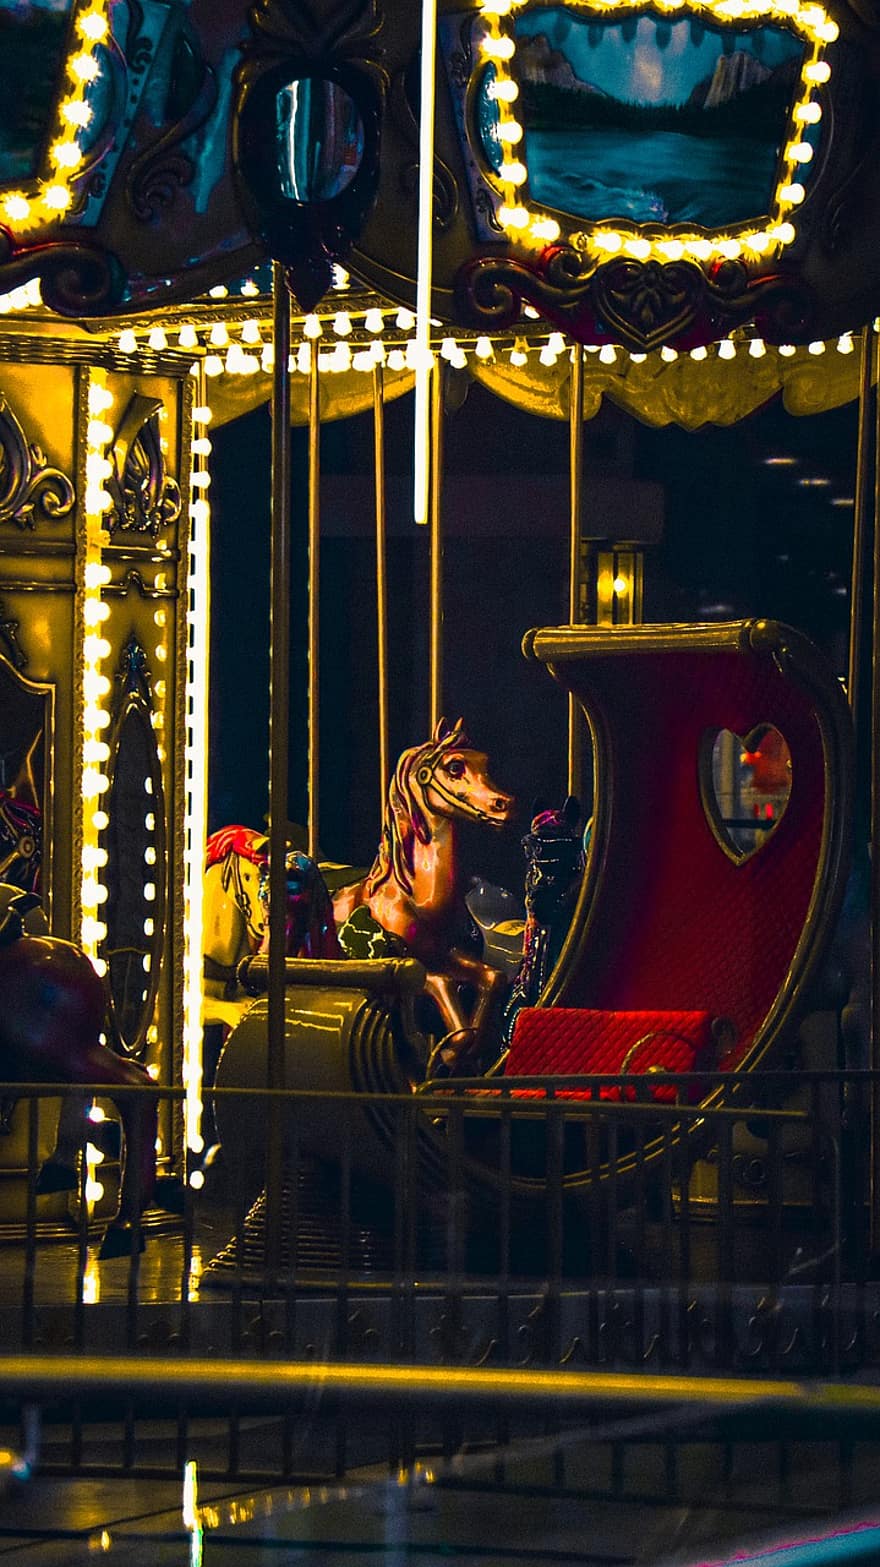 karusell, nöjespark, natt, karneval, Theme Park Ride, resande karneval, roligt, nöjespark rida, upplyst, häst, ljusutrustning